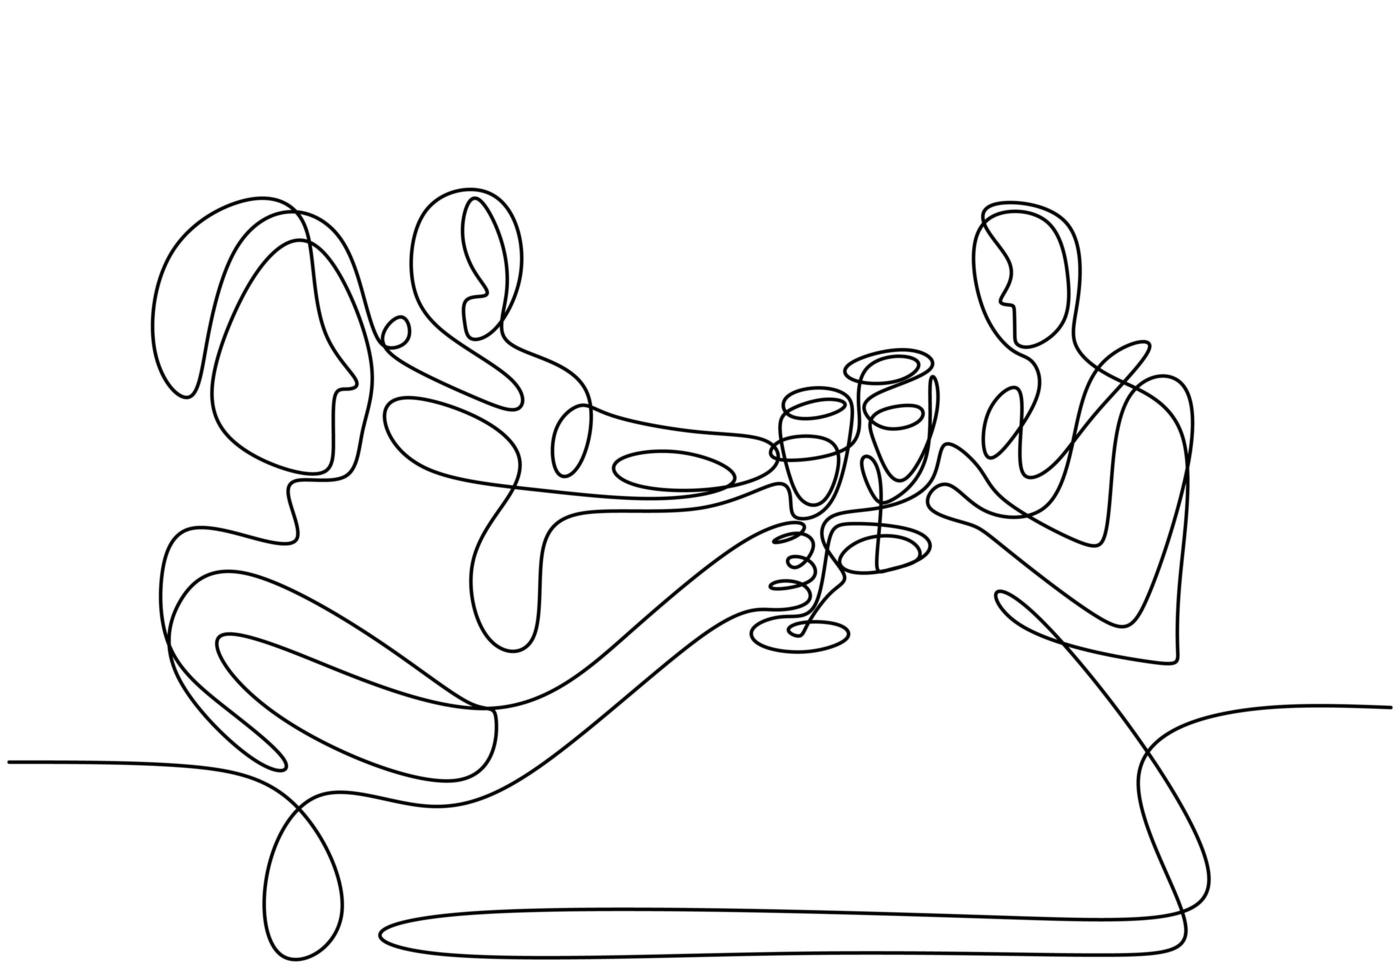 continuo un disegno a tratteggio, vettore di persone di gruppo in festa con bicchieri di vino o champagne. uomo e donna nella celebrazione della festa. design minimalista con semplicità isolato su sfondo bianco.